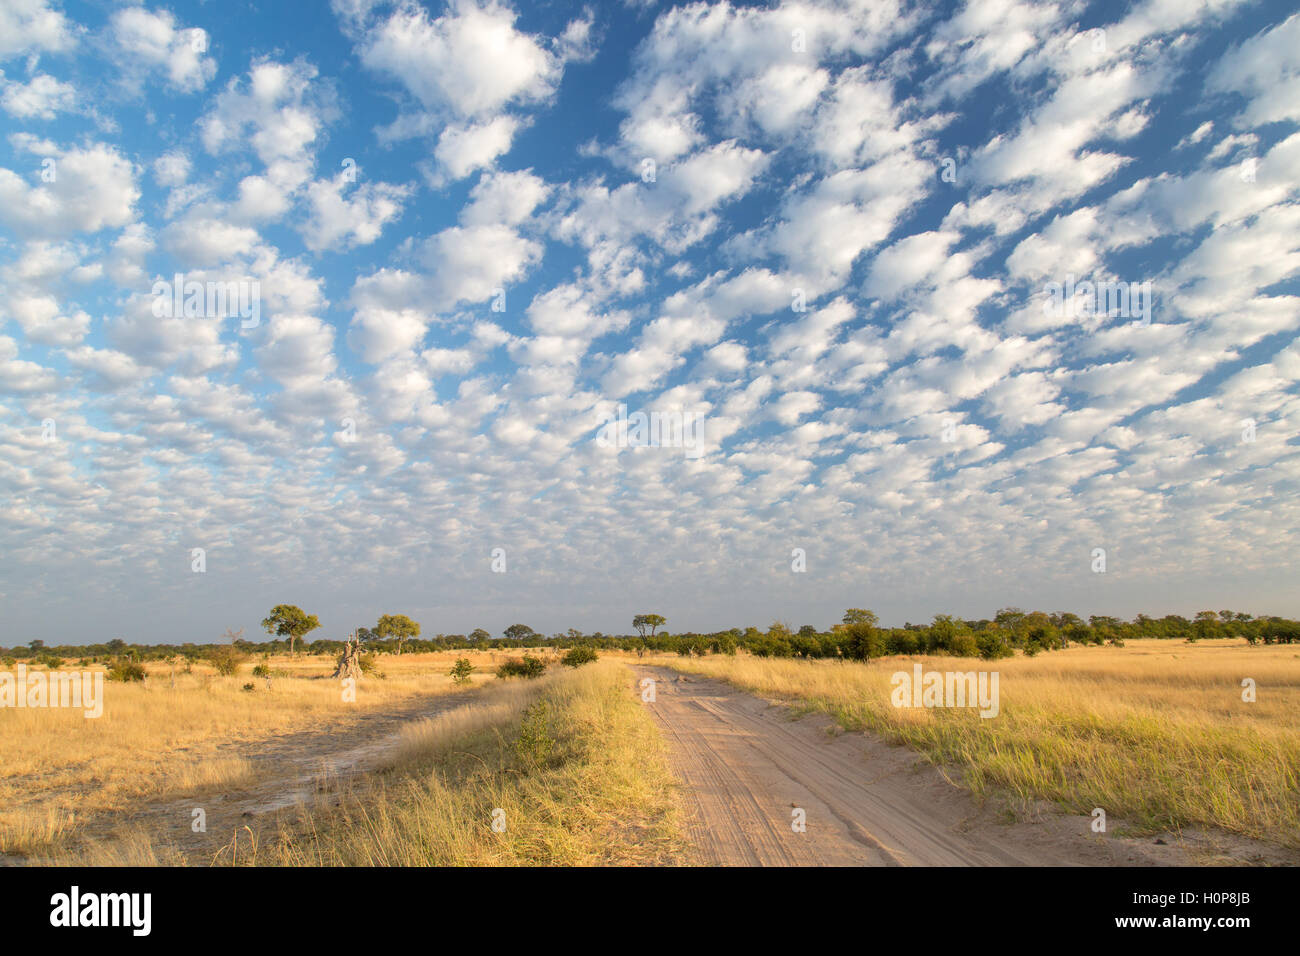 uma-estrada-de-terra-passando-em-uma-savana-com-paisagem-de-nuvens-espalhadas-ao-longo-de-um-amarelo-aberto-prados-com-casquilho-dispersos-h0p8jb.jpg